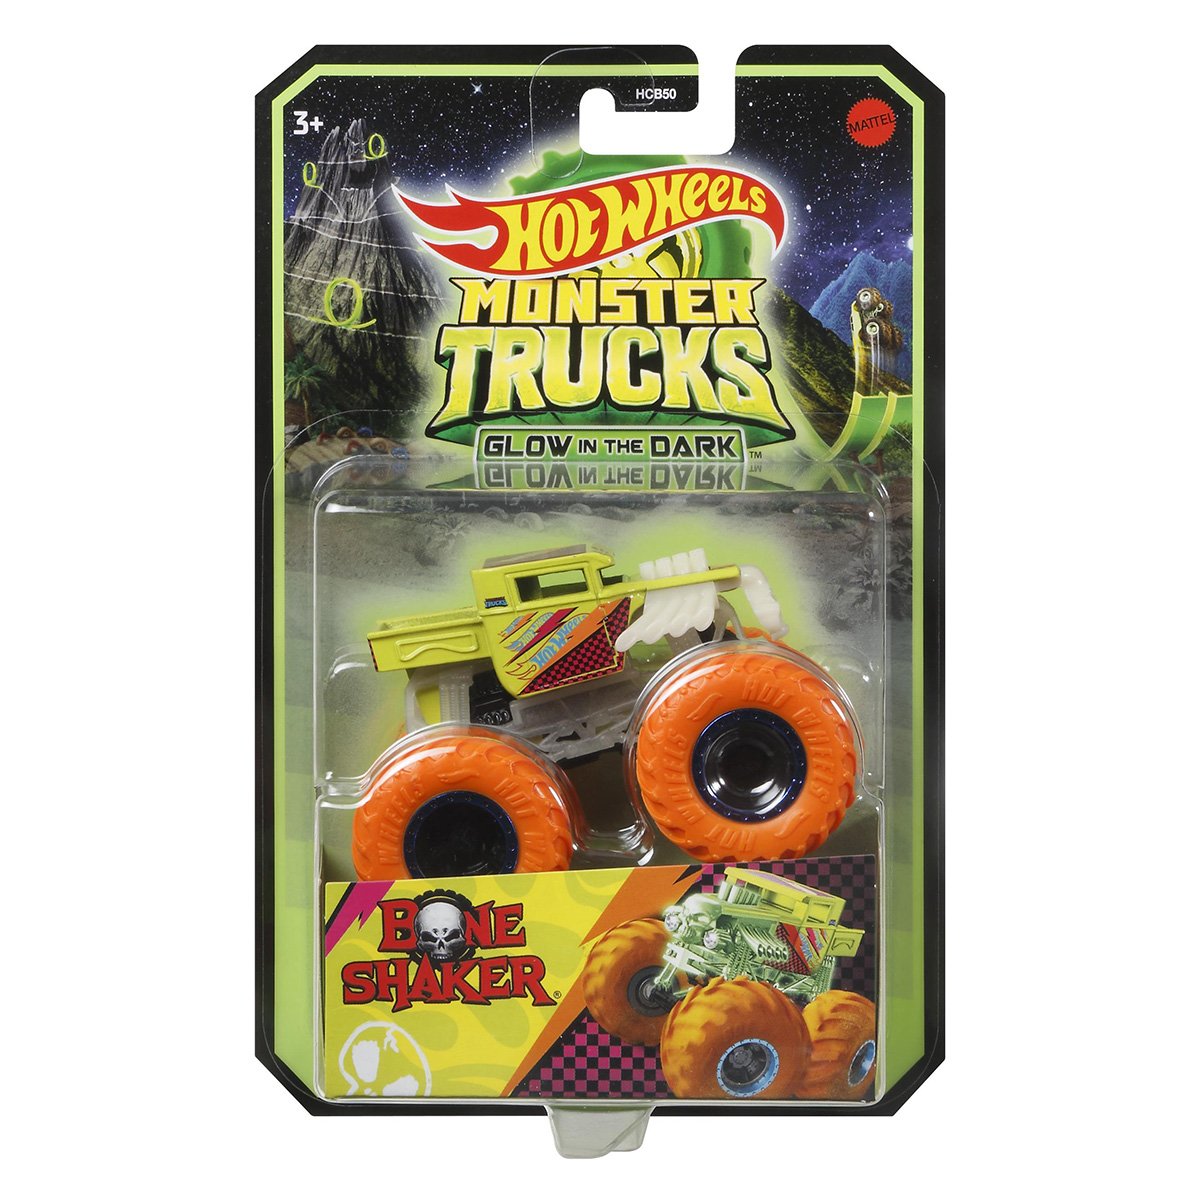 Masinuta Monster Trucks, Hot Wheels, Glow in the Dark, 1:64, Bone Shaker, HCB55 Masinute 2023-09-26